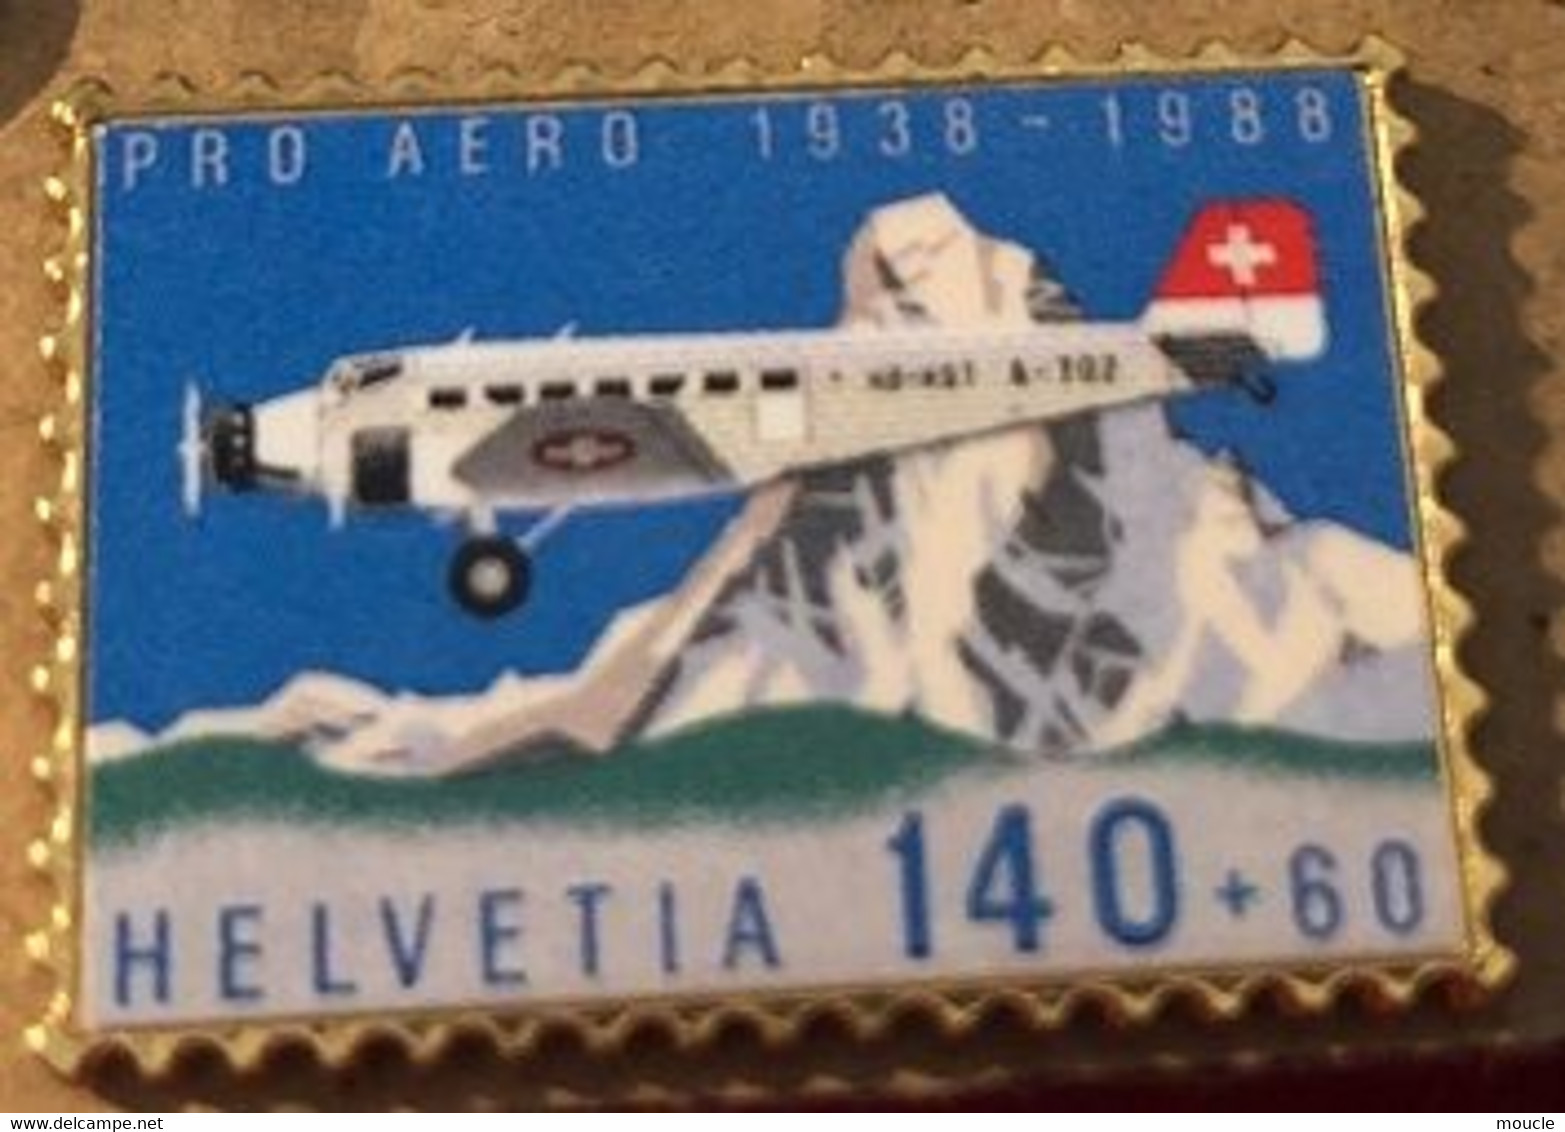 AVION - PLANE - FLUGZEUG - AEREO - HELVETIA 140+60 - CERVIN - PRO AERO 1938/1988  - SUISSE - SCHWEIZ -SWITZERLAND-(BLEU) - Vliegtuigen